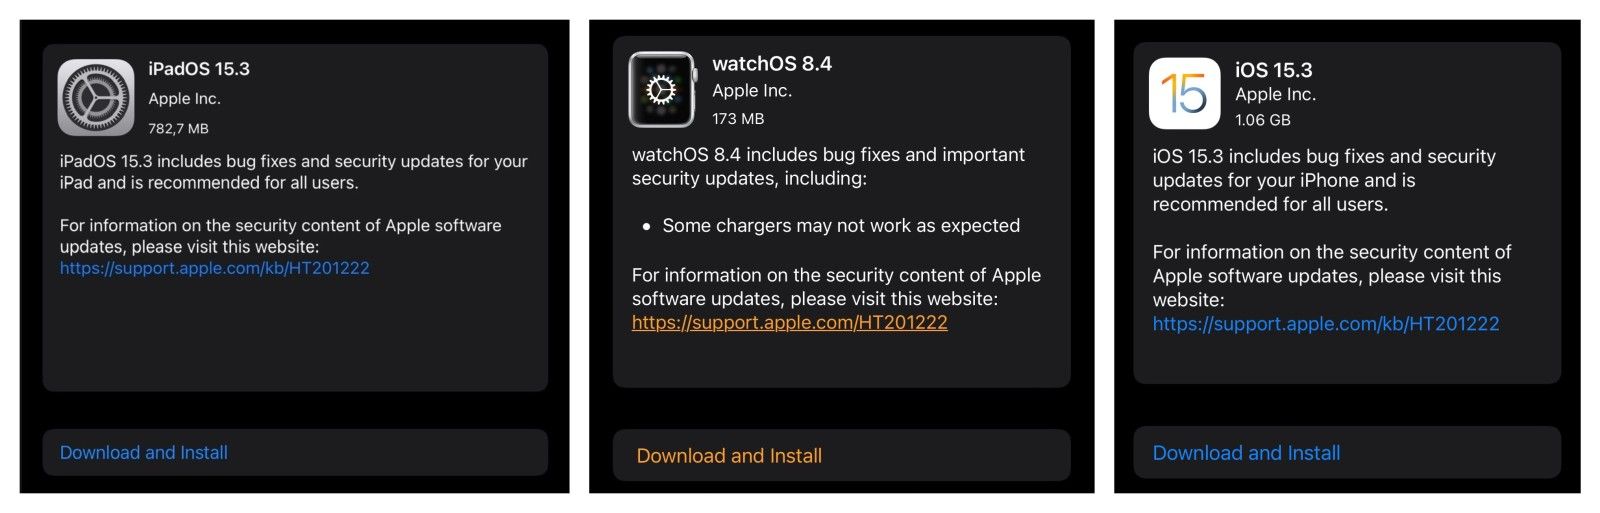 iOS 15.3 iPadOS 15.3 watchOS 8.4 software update download